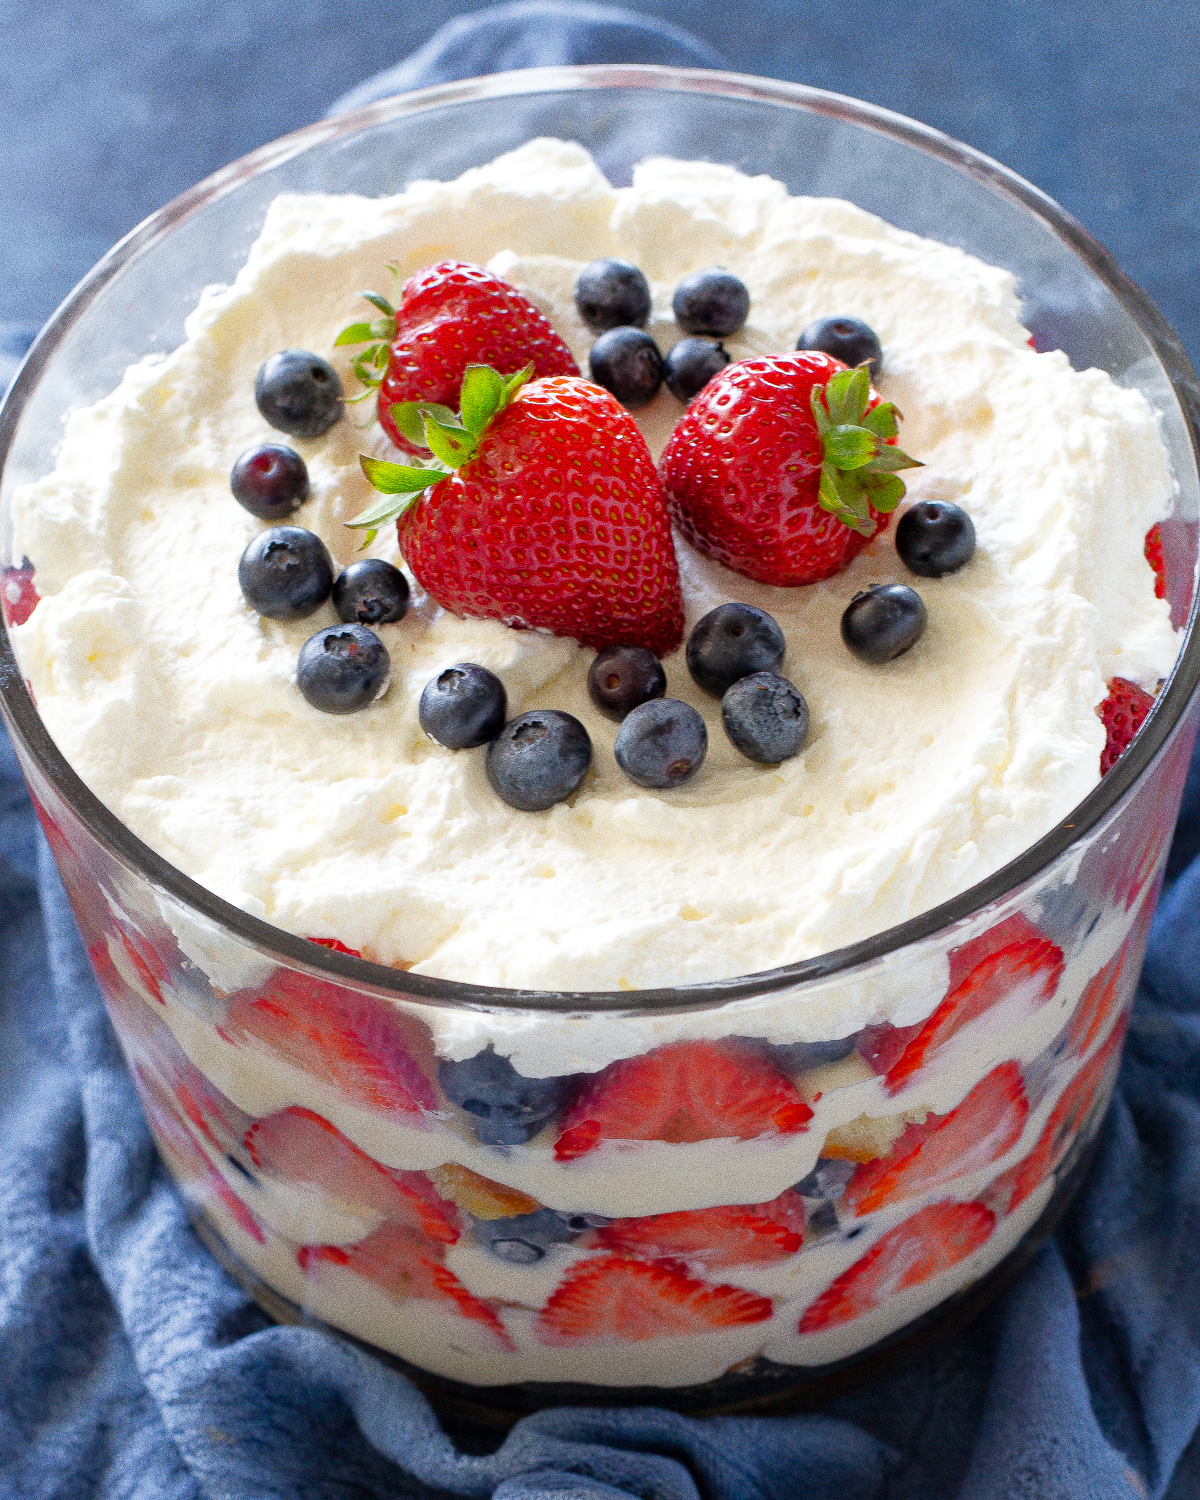  Patriotic Trifle